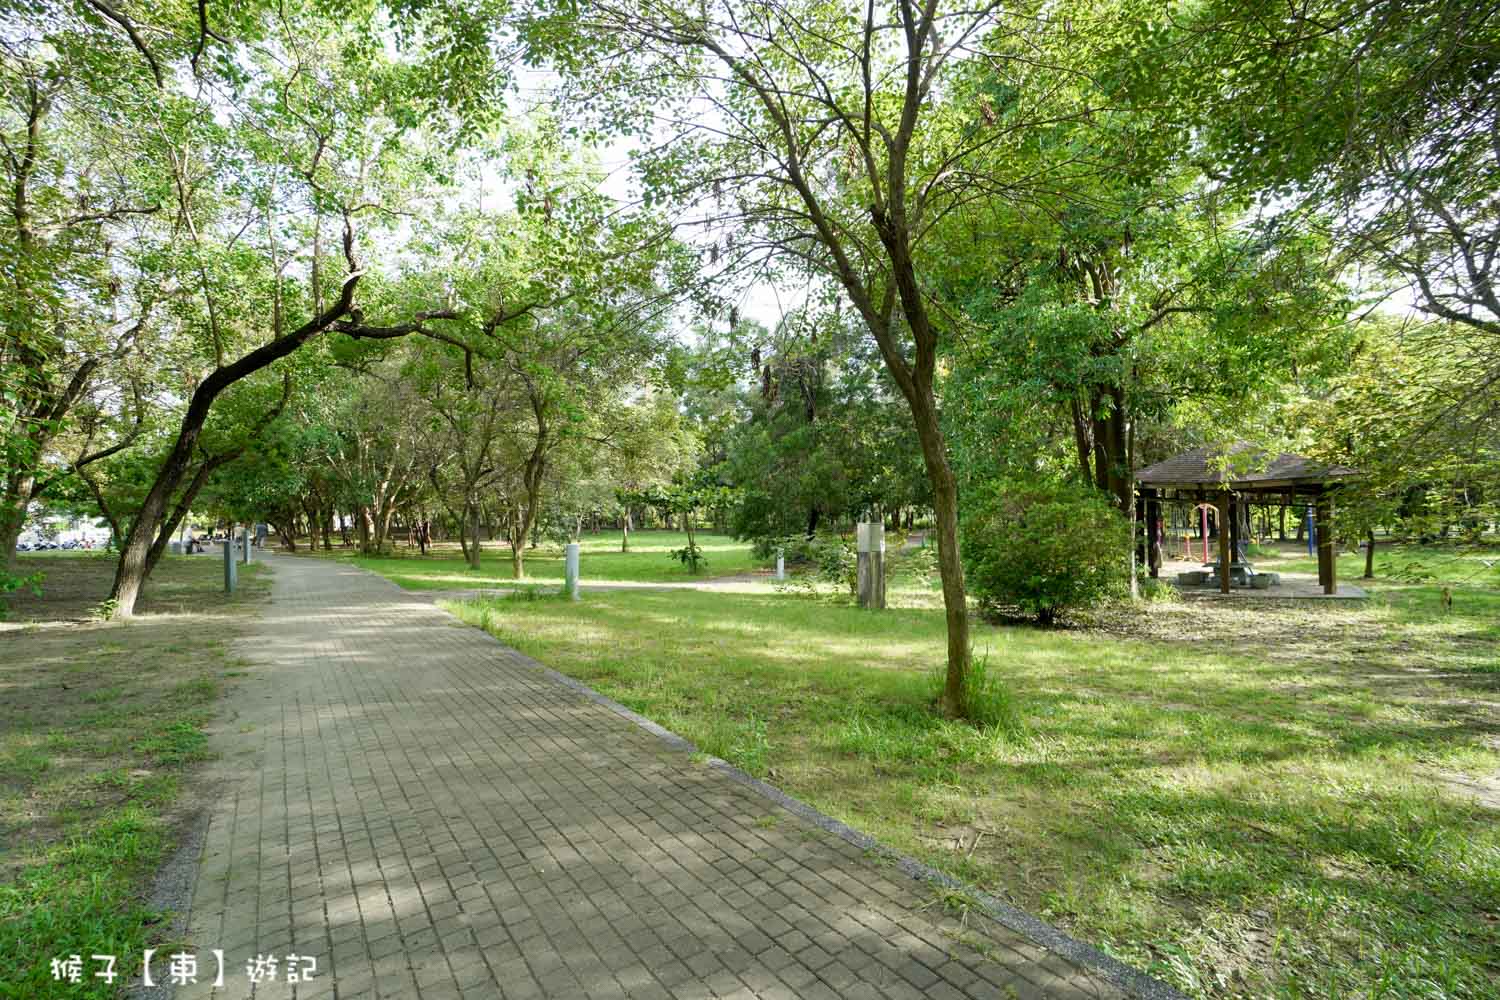 延伸閱讀：[台南] 億載公園 億載金城旁15.1公頃綠地 小徑步道漫步 大草坪野餐 環境超棒 好停車